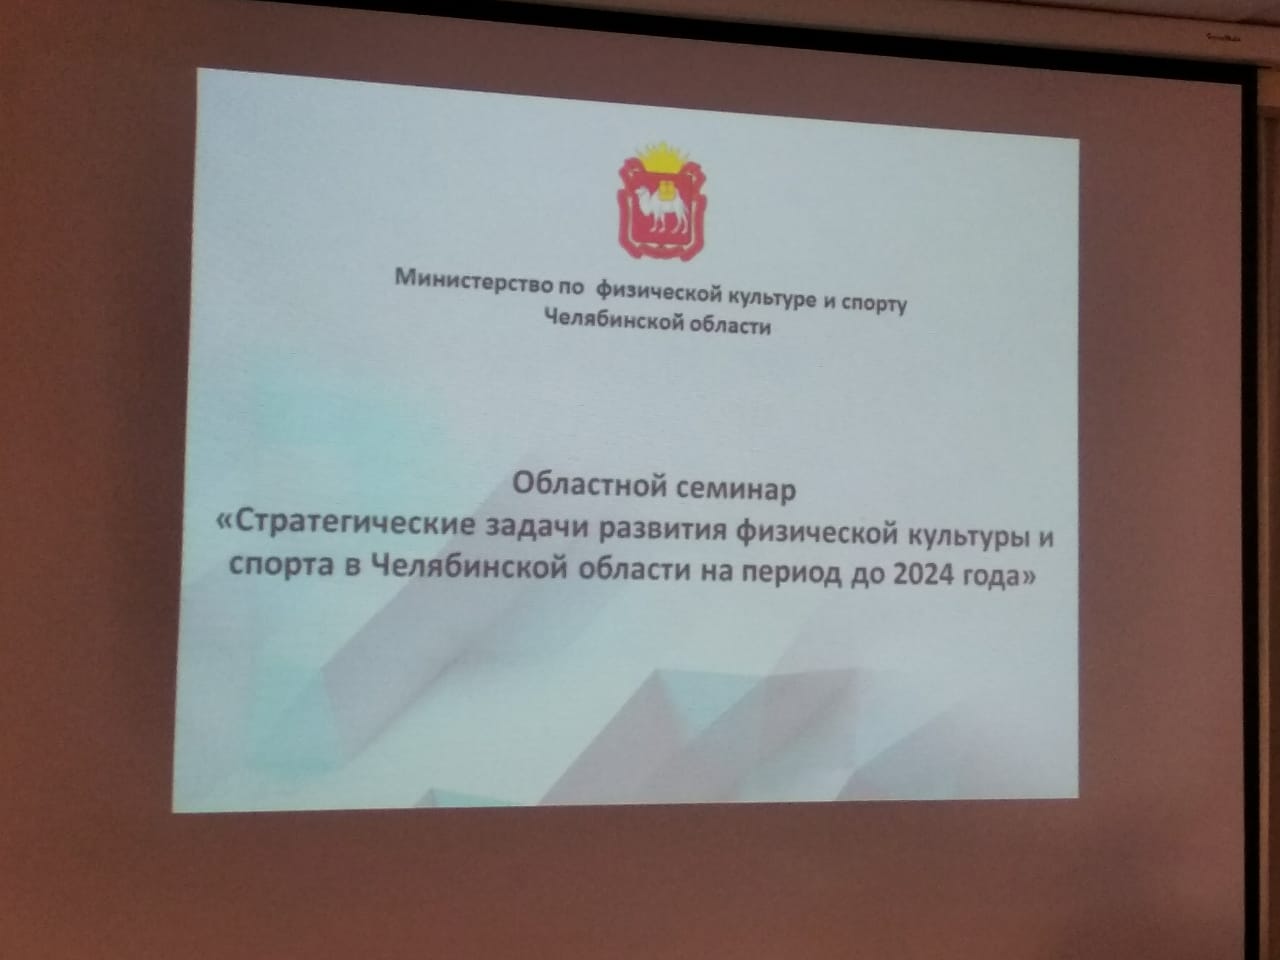 Общее дело на Областном семинаре "Стратегические задачи развития физической культуры и спорта в Челябинской области на период до 2024 года"